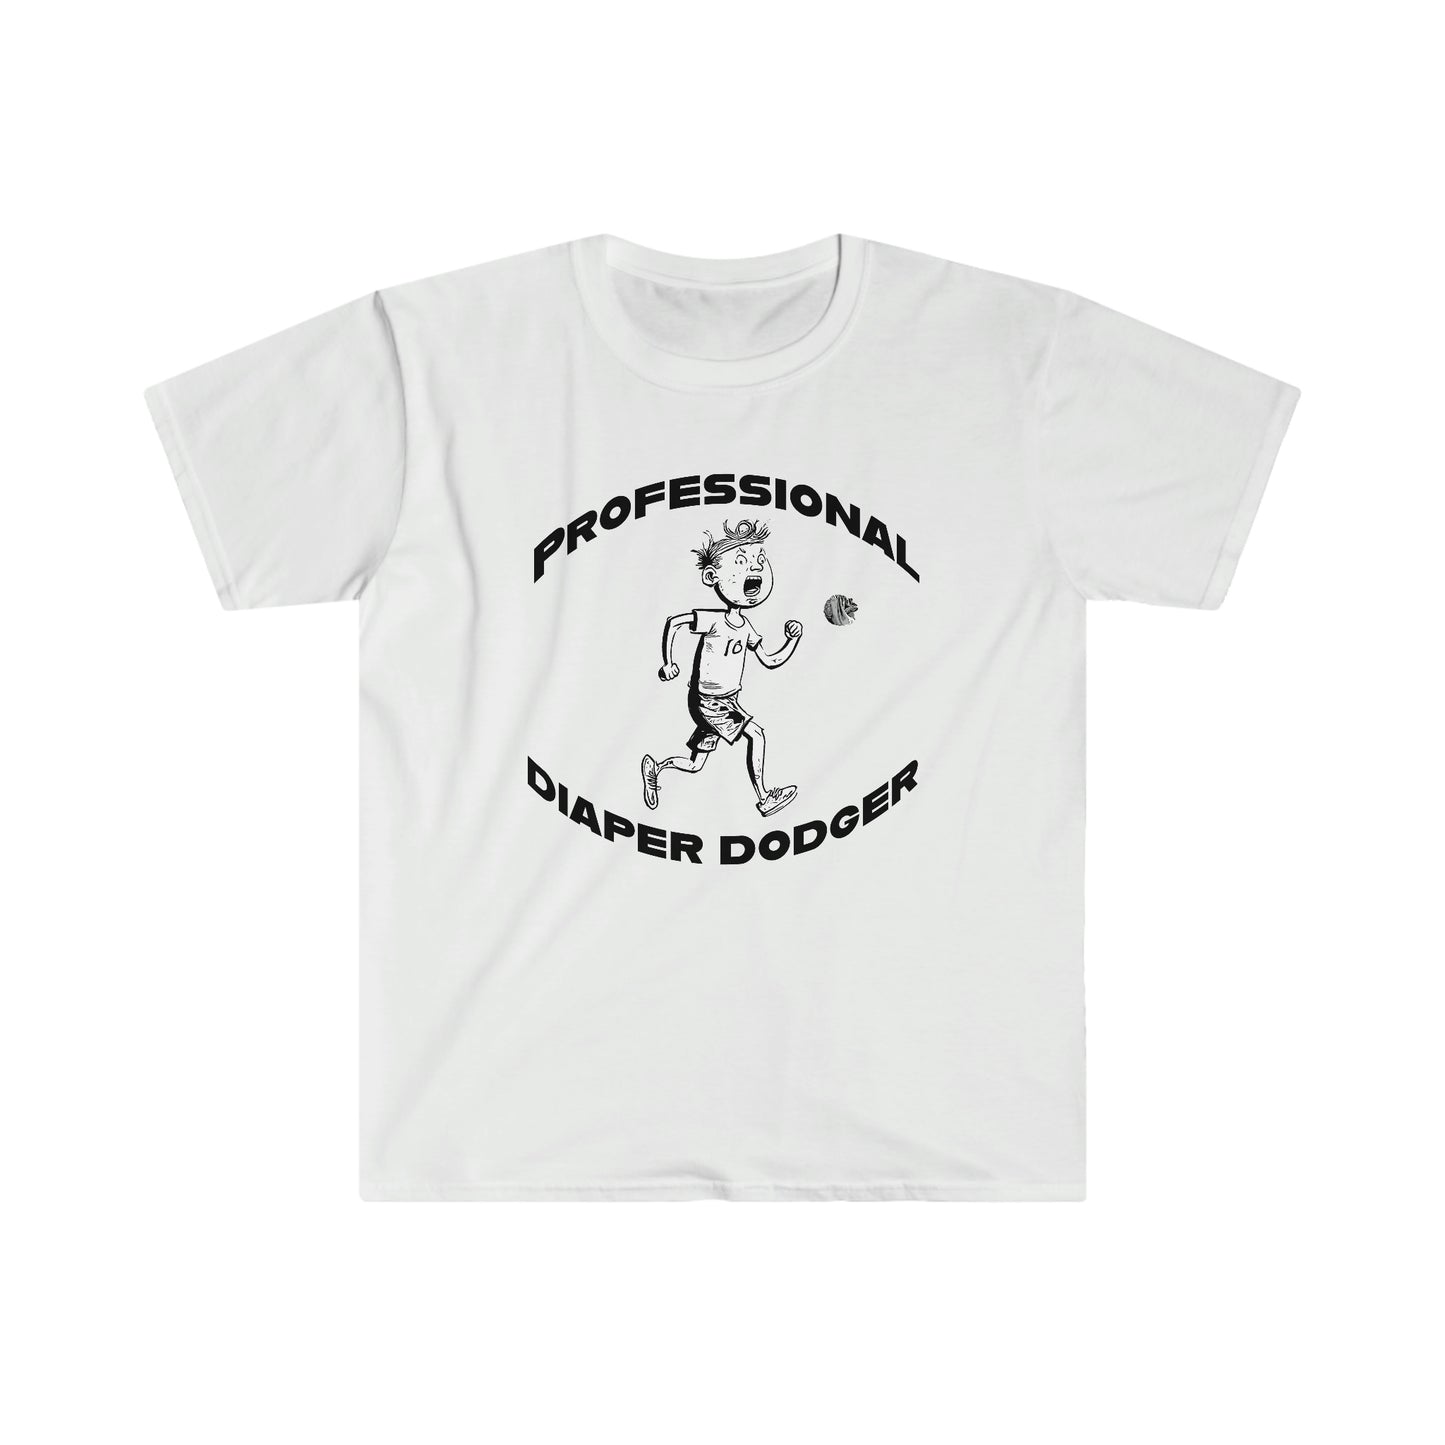 Professional Diaper Dodger T-Shirt